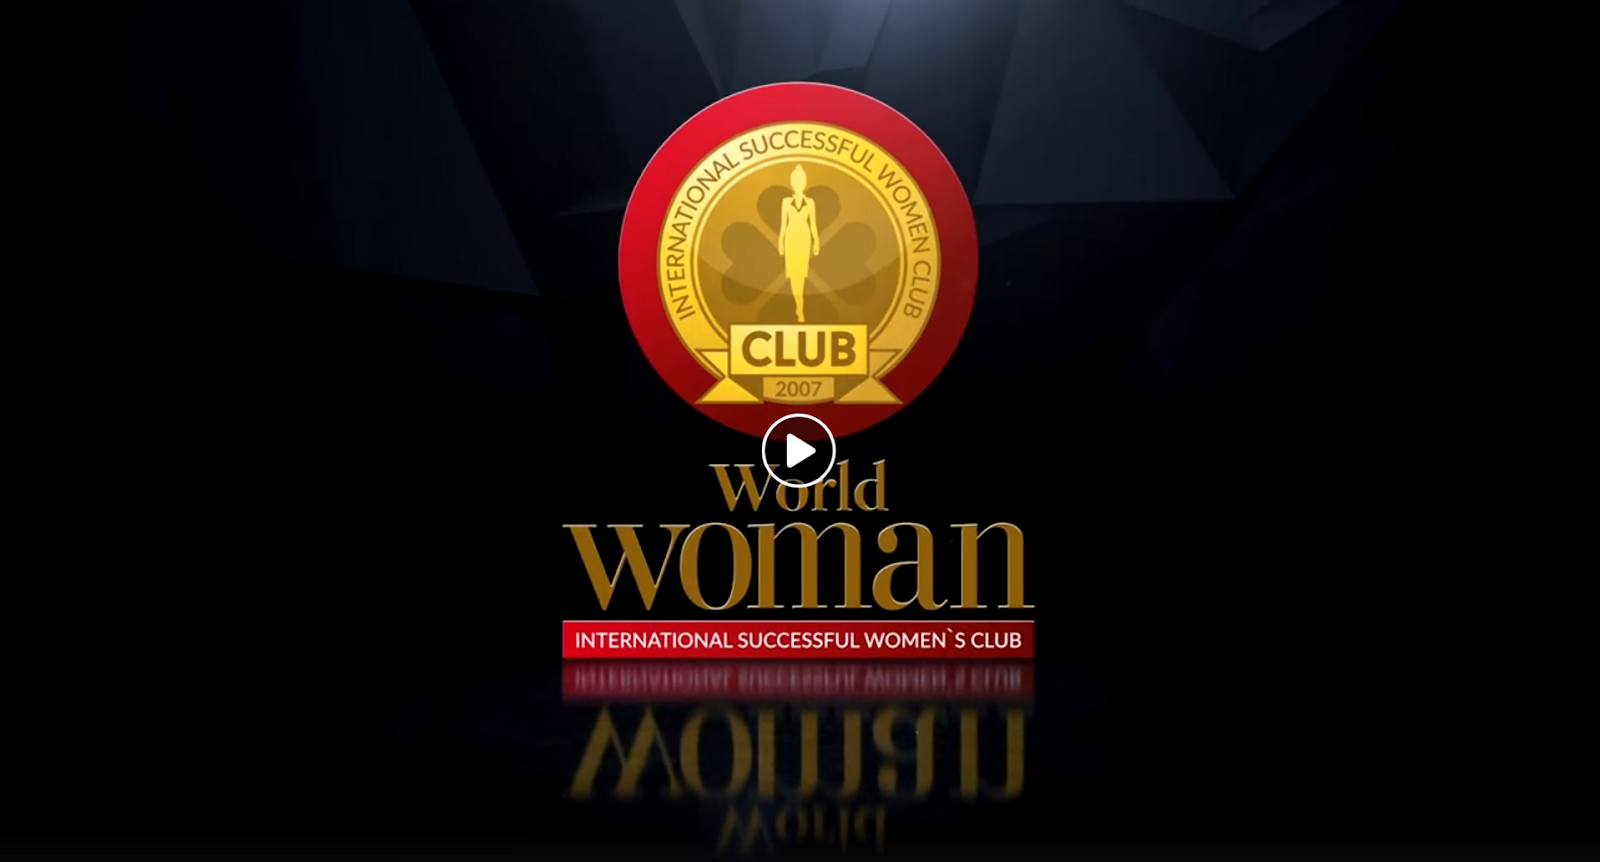 WORLD WOMAN CLUB